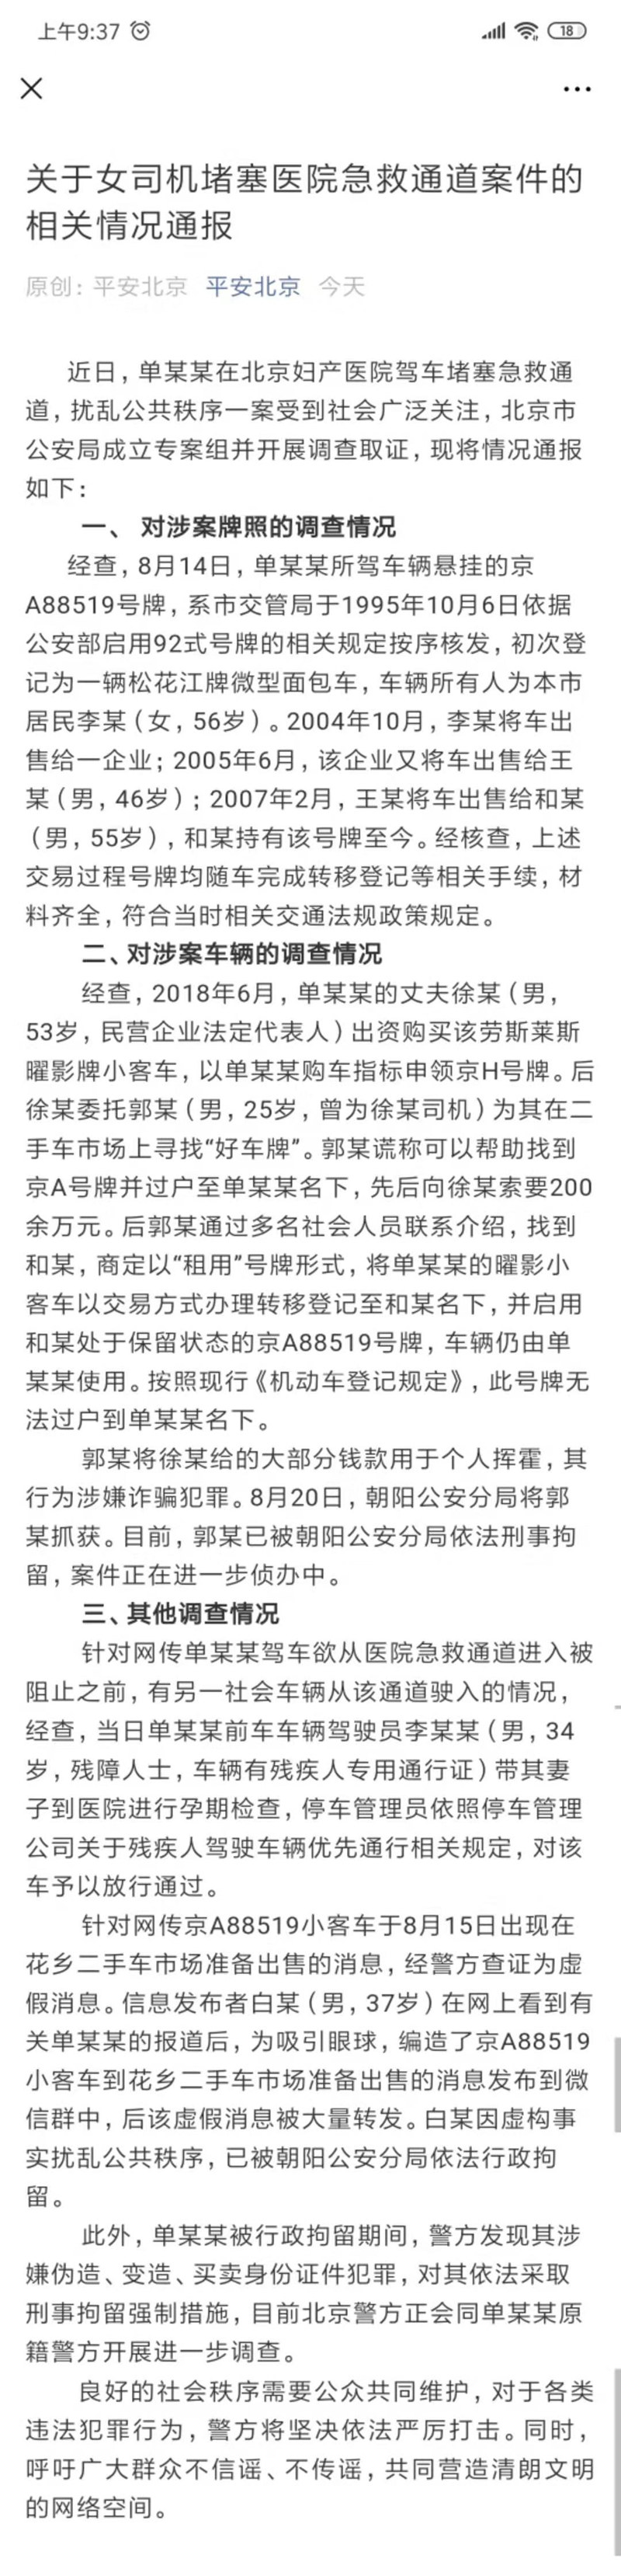 京A8司机堵医院案情况通报：车辆未卖 涉嫌伪造、变造、买卖身份证件犯罪